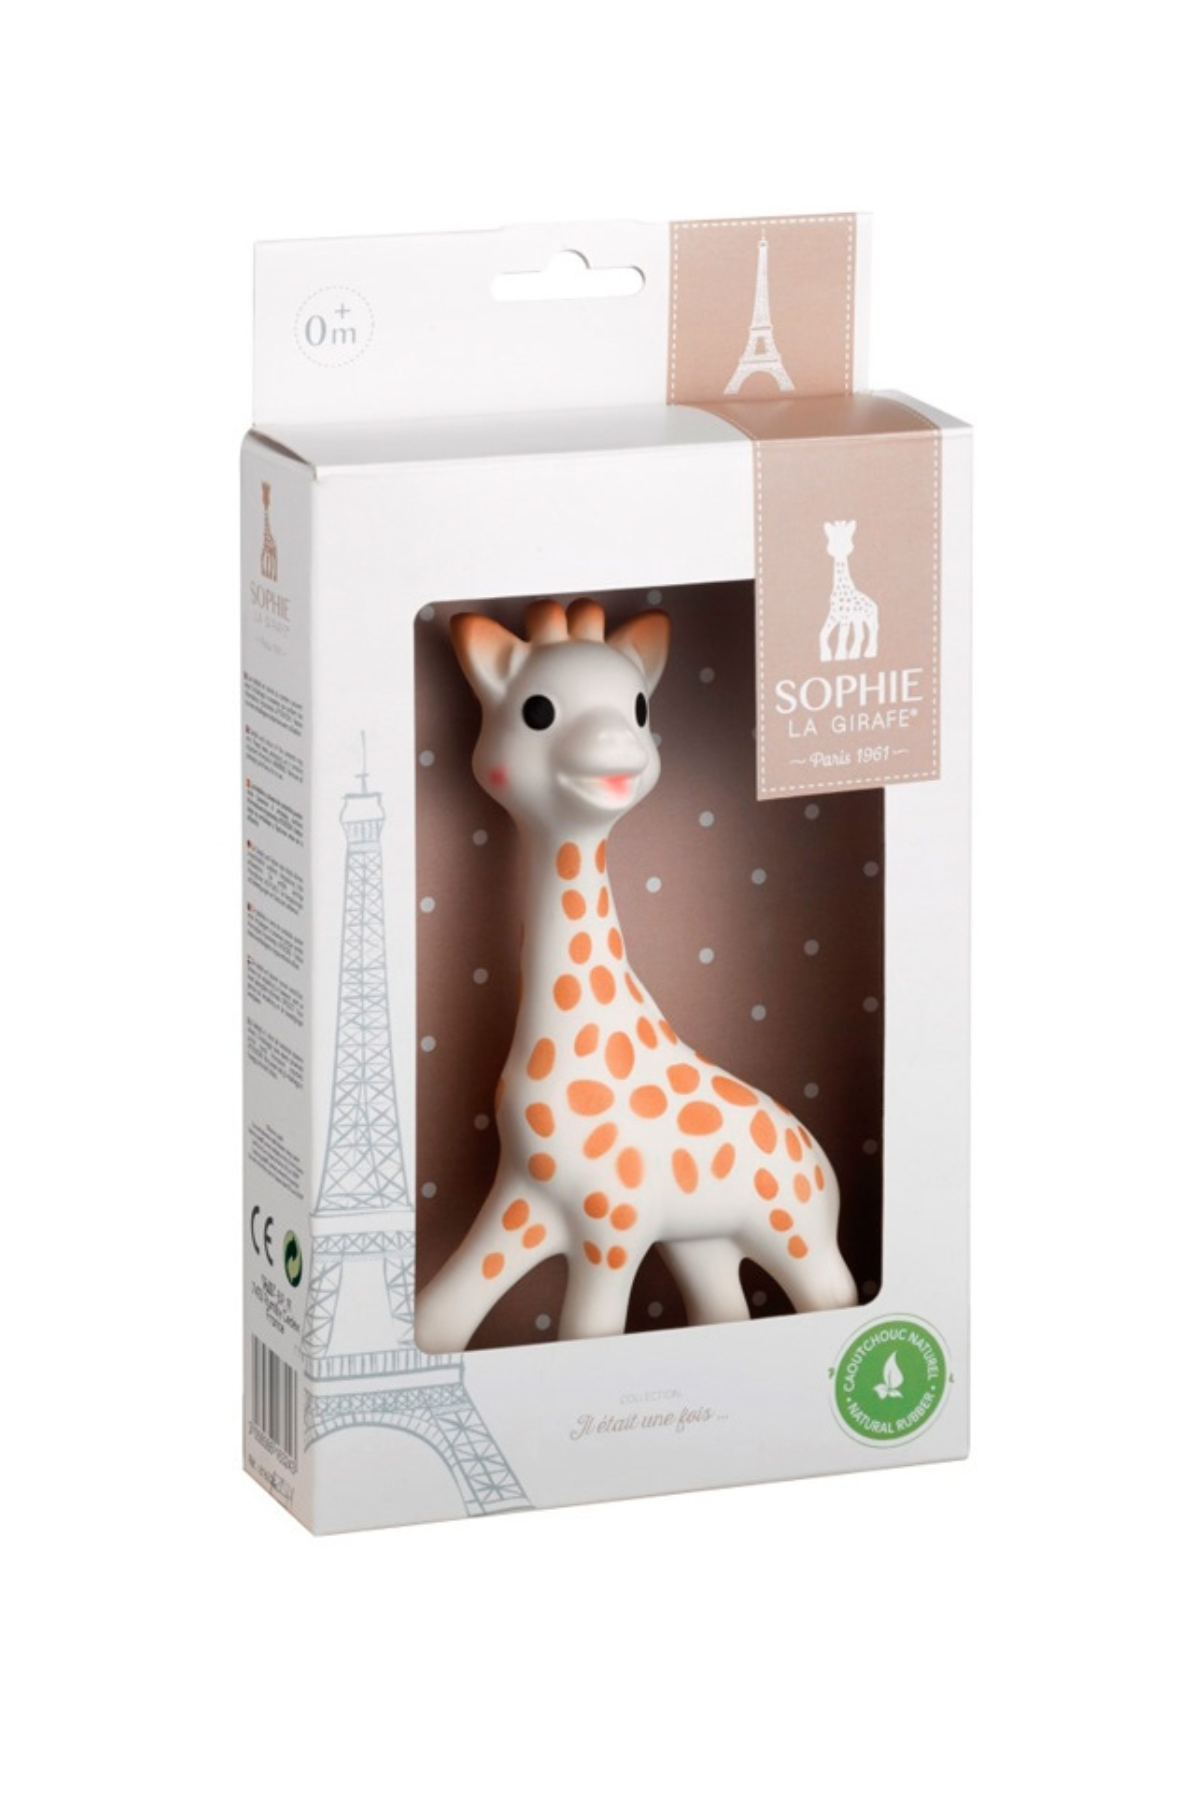 Sophie "La Girafe" im Geschenkkarton - SYNCSON 